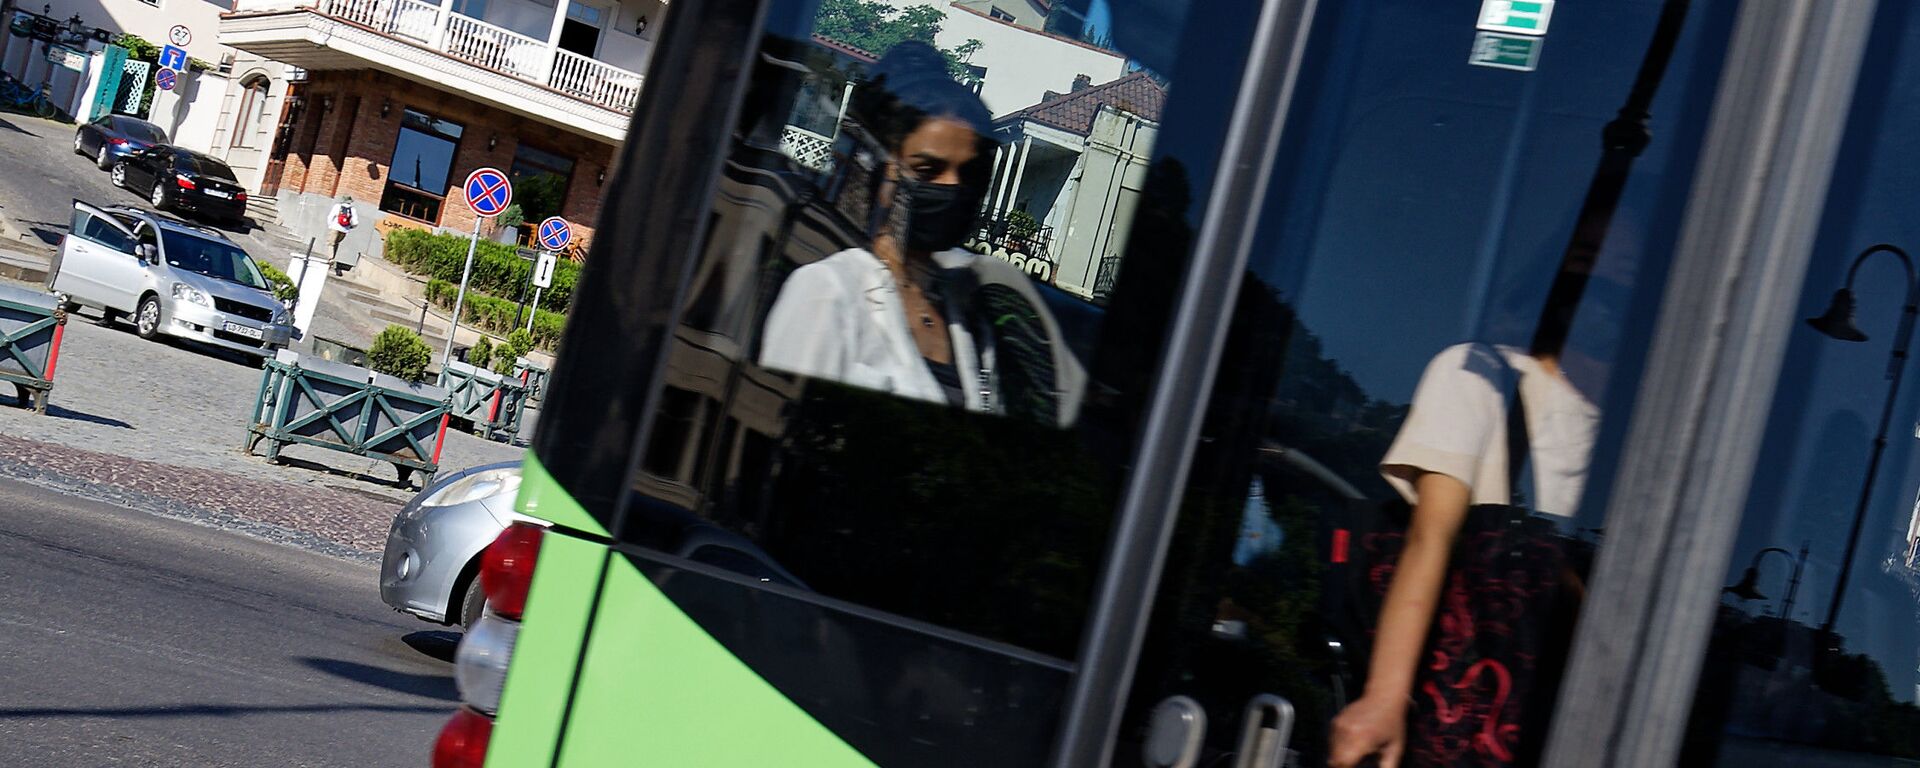 Эпидемия коронавируса - девушка в автобусе в маске - Sputnik Грузия, 1920, 22.07.2021